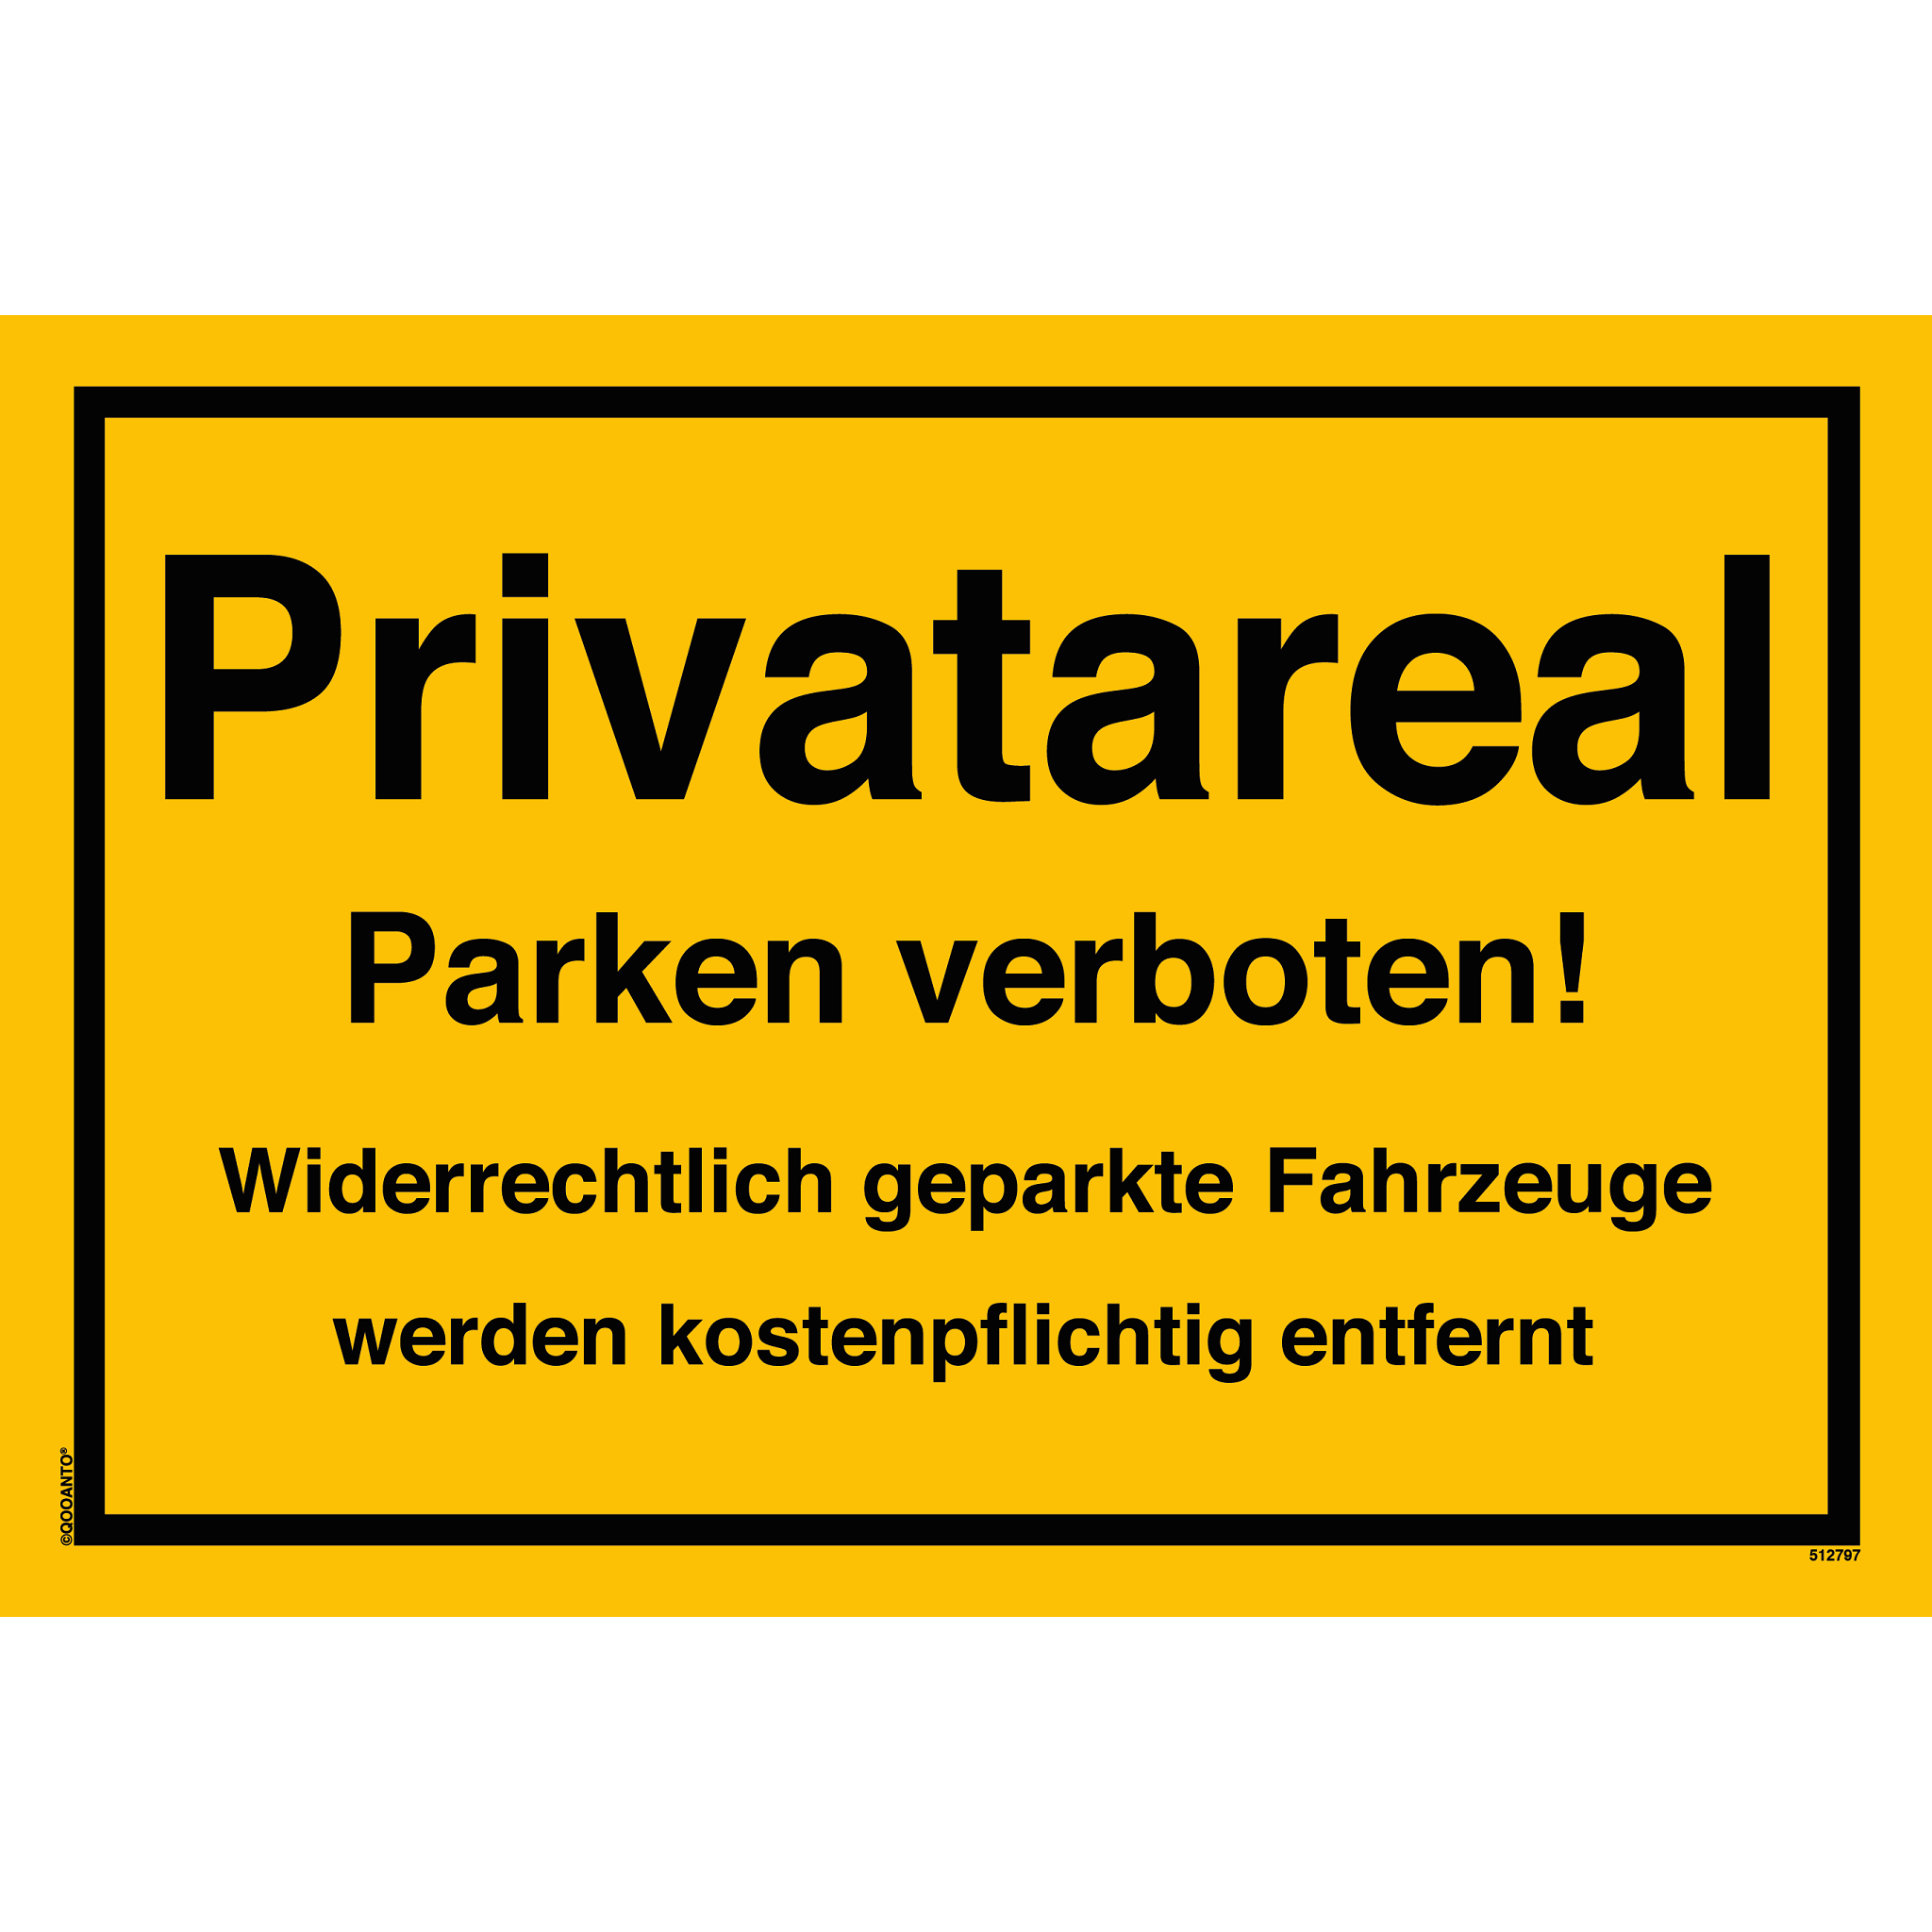 Privatareal Parken verboten! Widerrechtlich geparkte Fahrzeuge werden kostenpflichtig entfernt, gelb, Schild